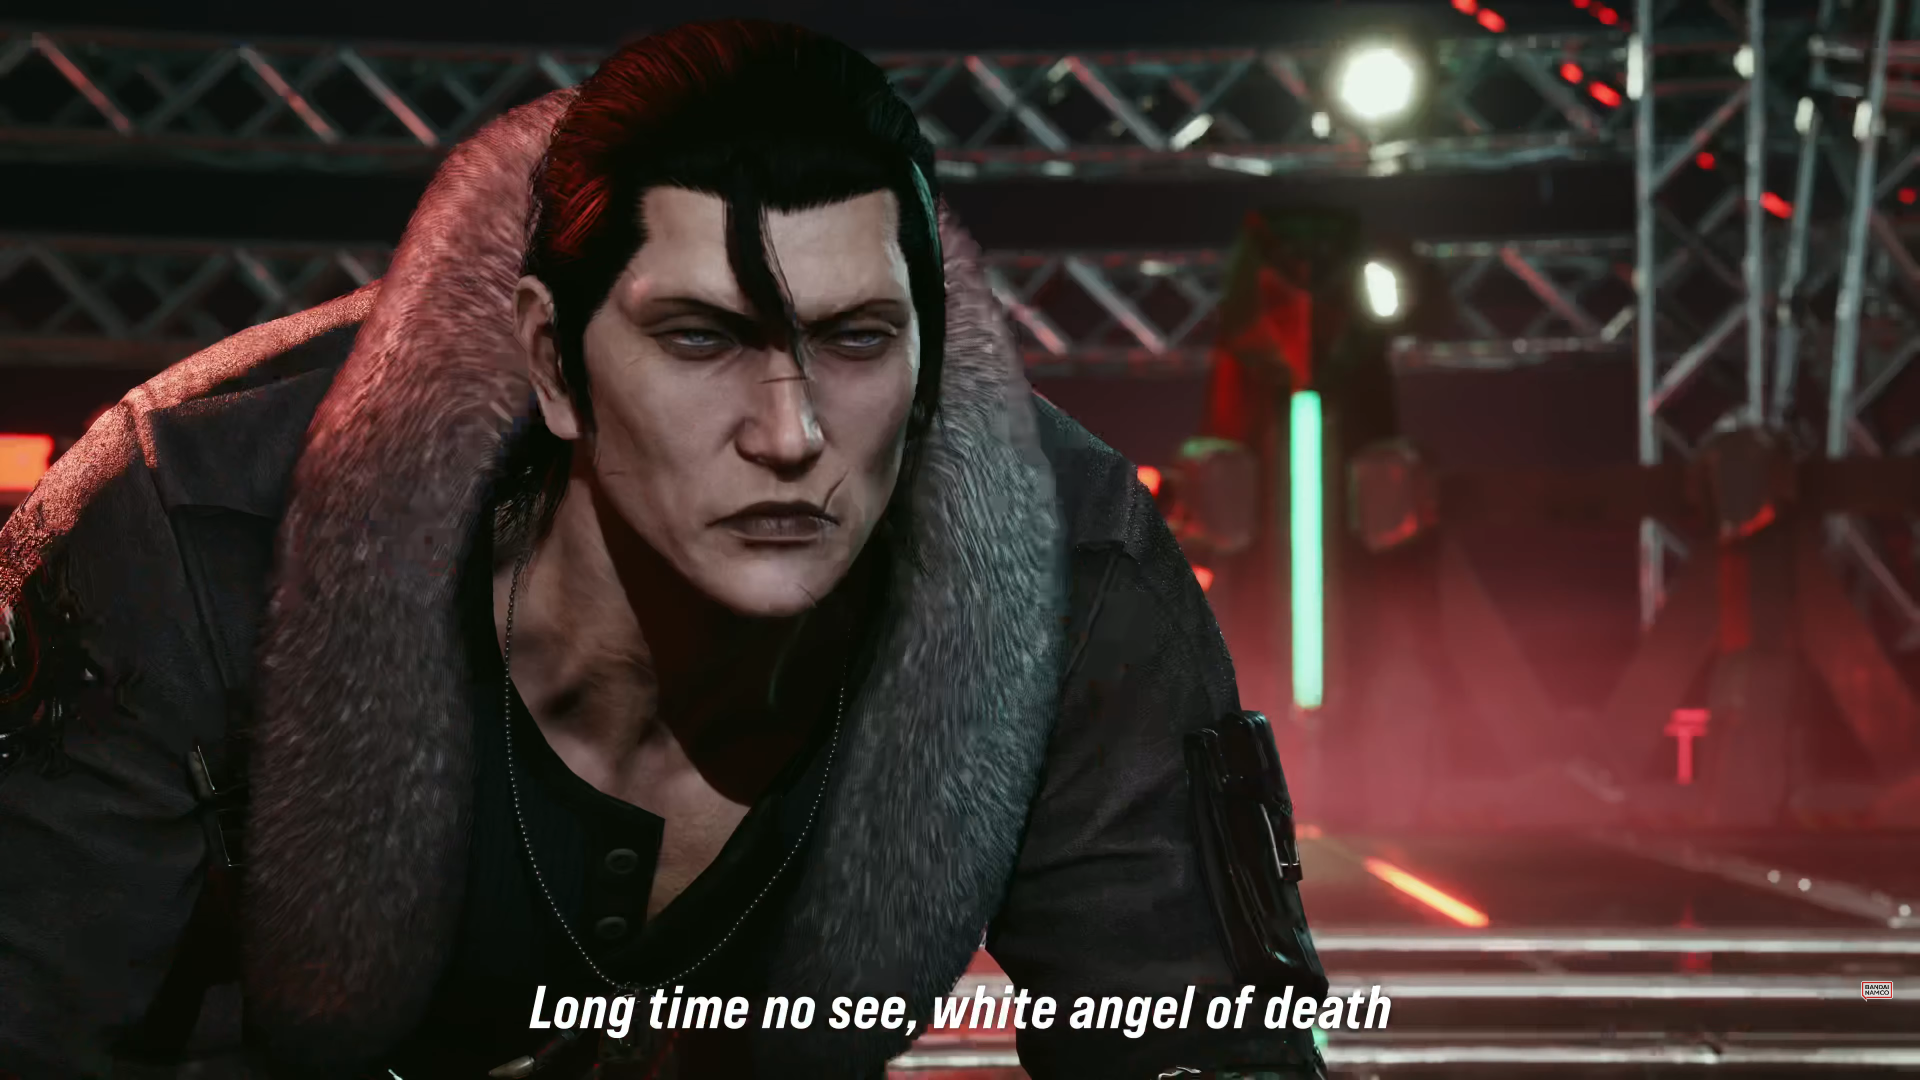 Tekken 8 - Dragunov Reveal & Gameplay Trailer